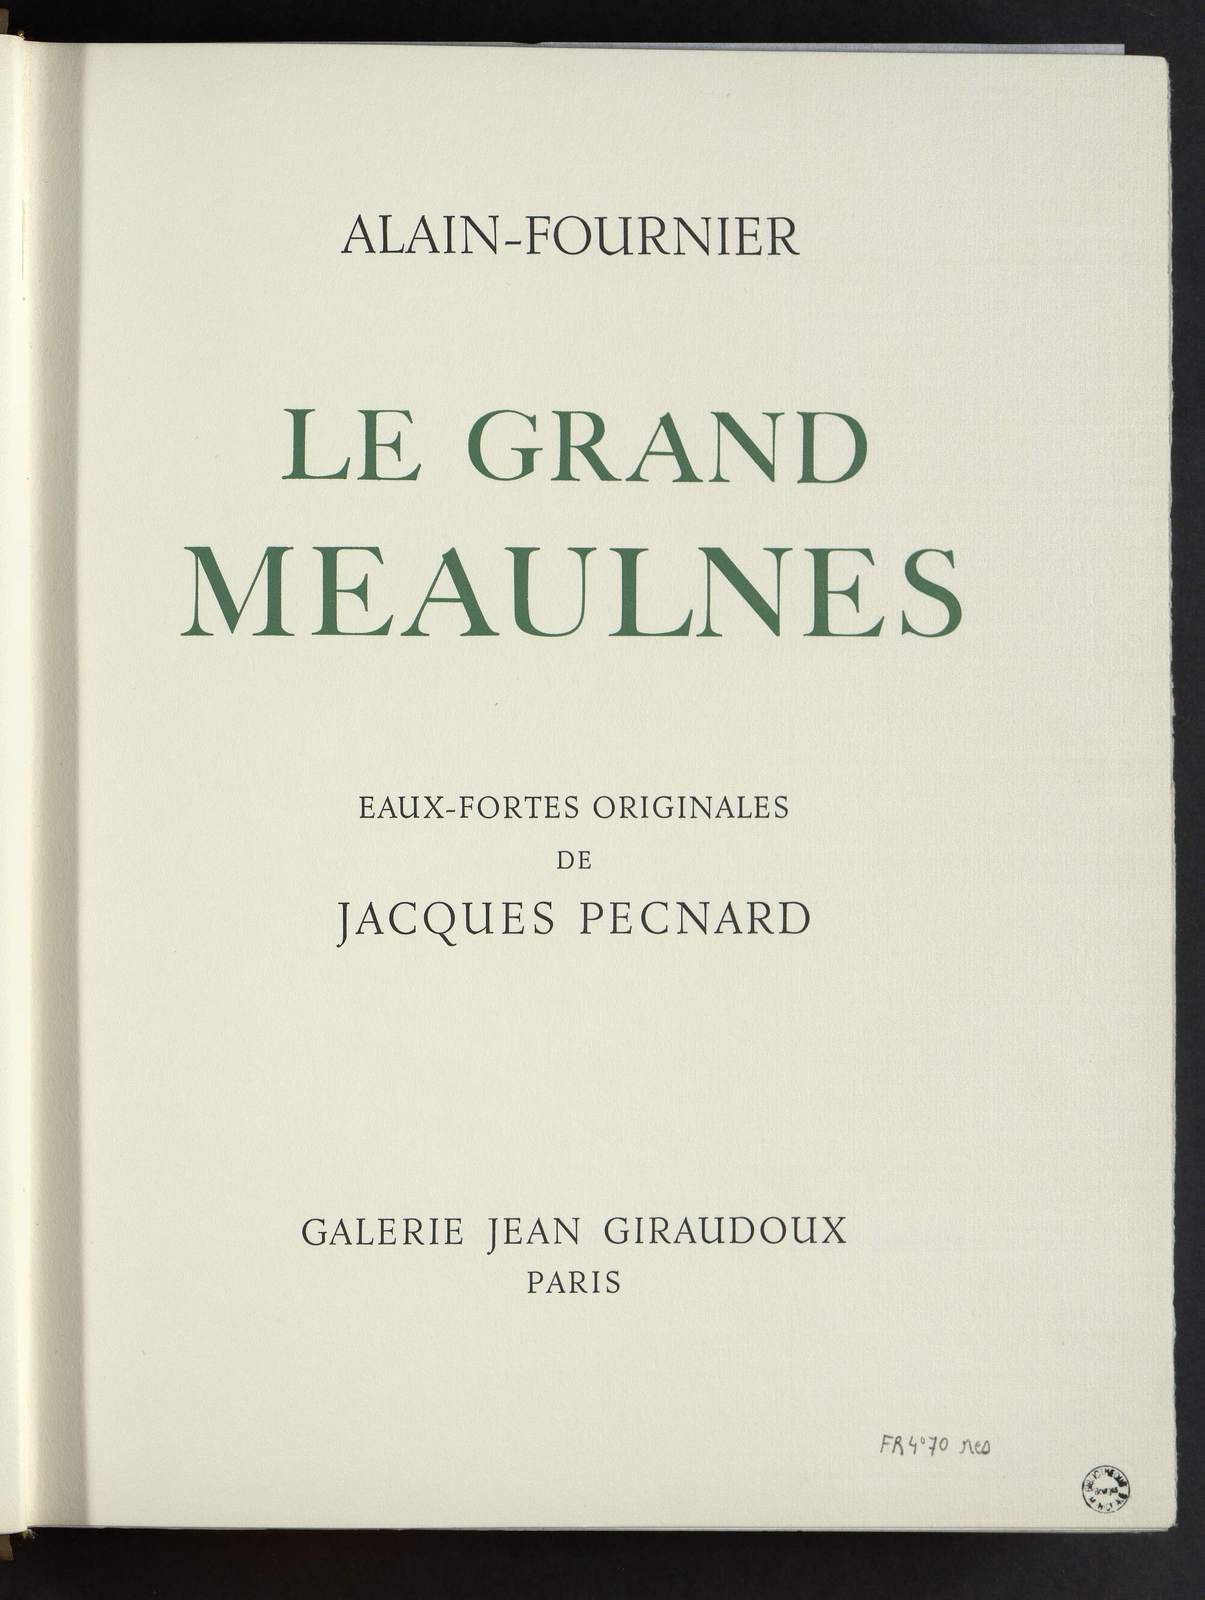 Le Grand Meaulnes, Frantz de Galais, illustré par Jacques Pecnard, Galerie Jean Giraudoux, 1967